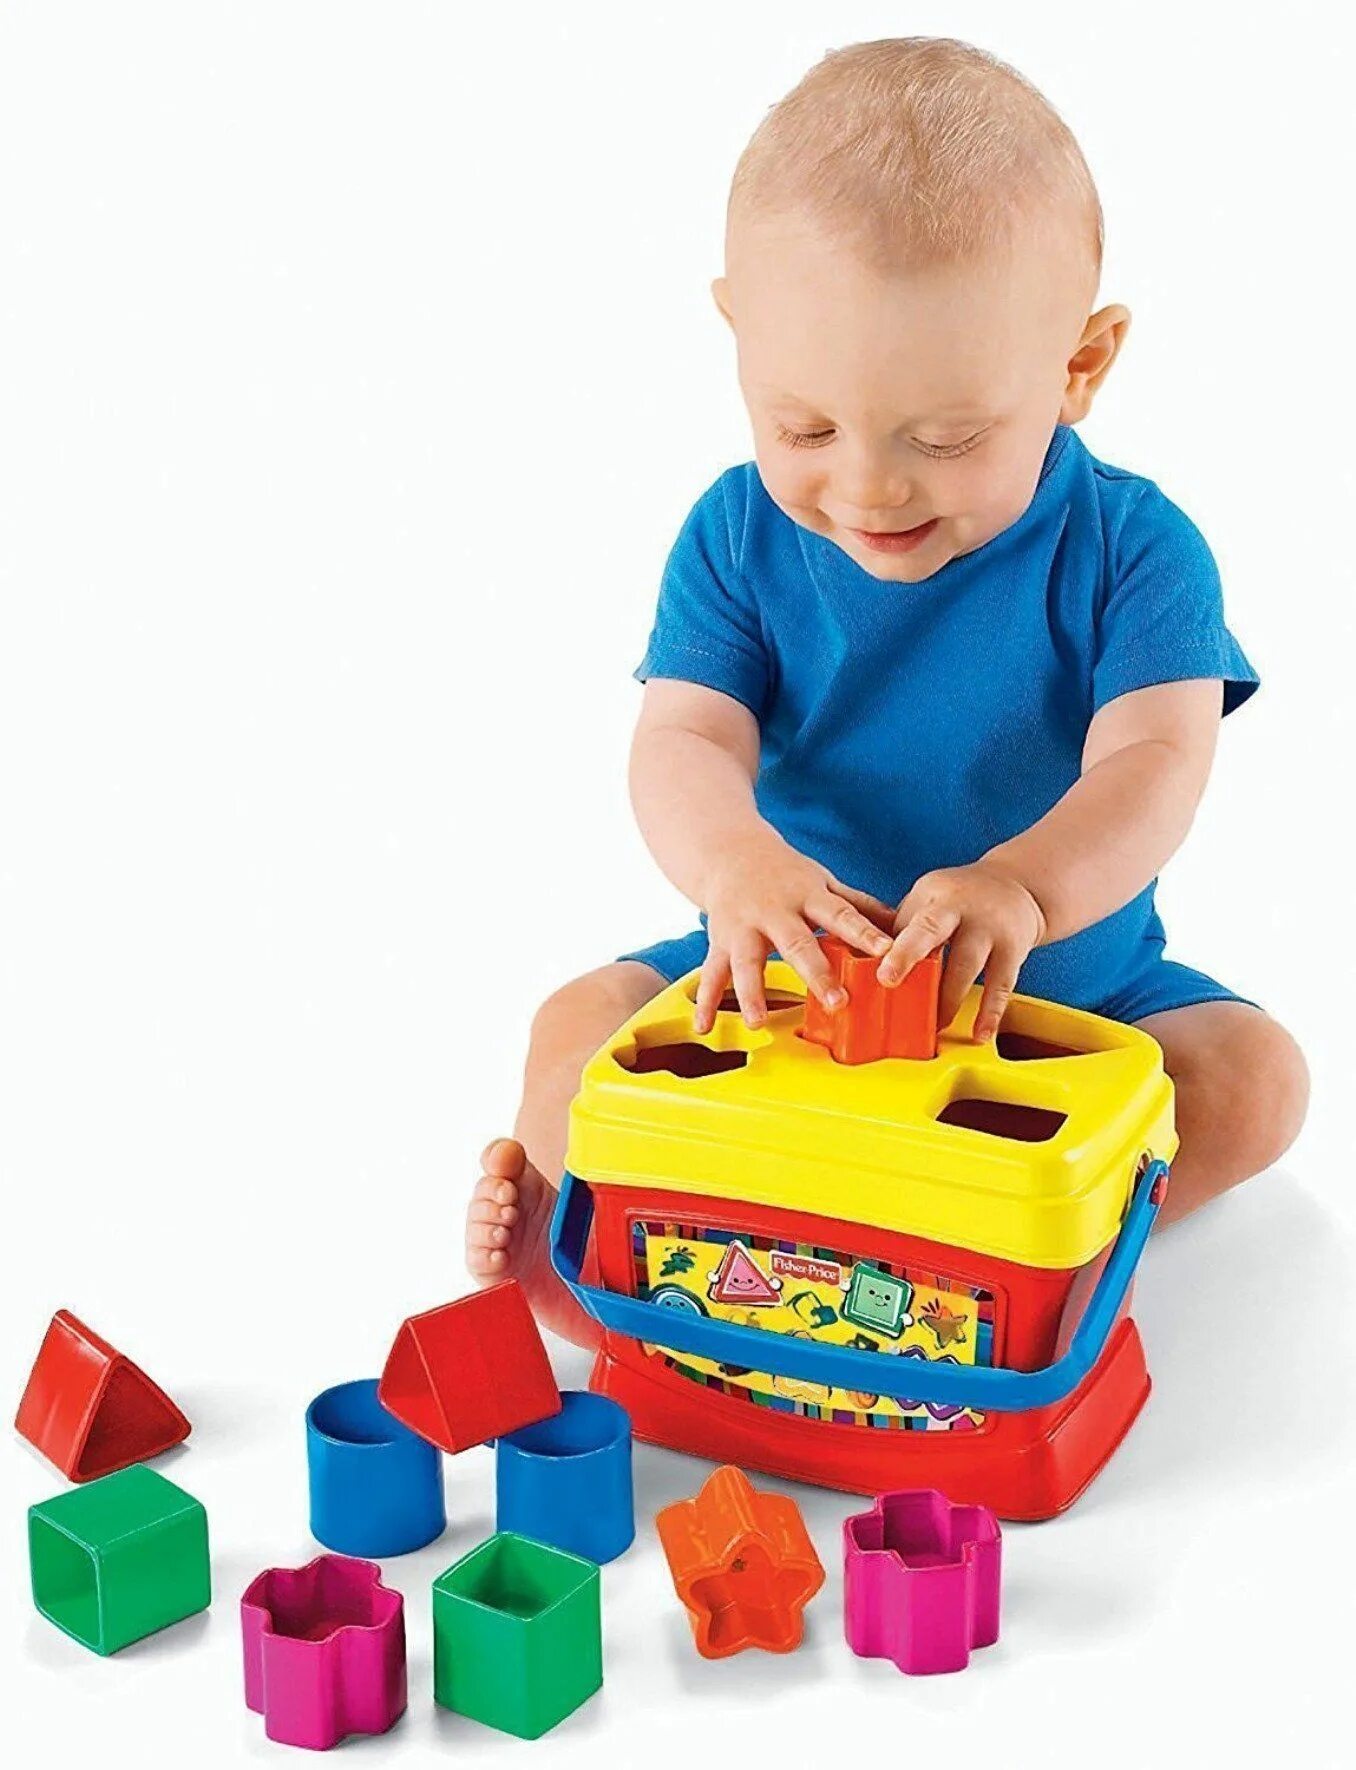 Сортер 2. Fisher Price сортер первый кубик. Первые кубики малыша Fisher Price. Детские игрушки для ребенка 1 год. Игрушки для детей 4 лет.